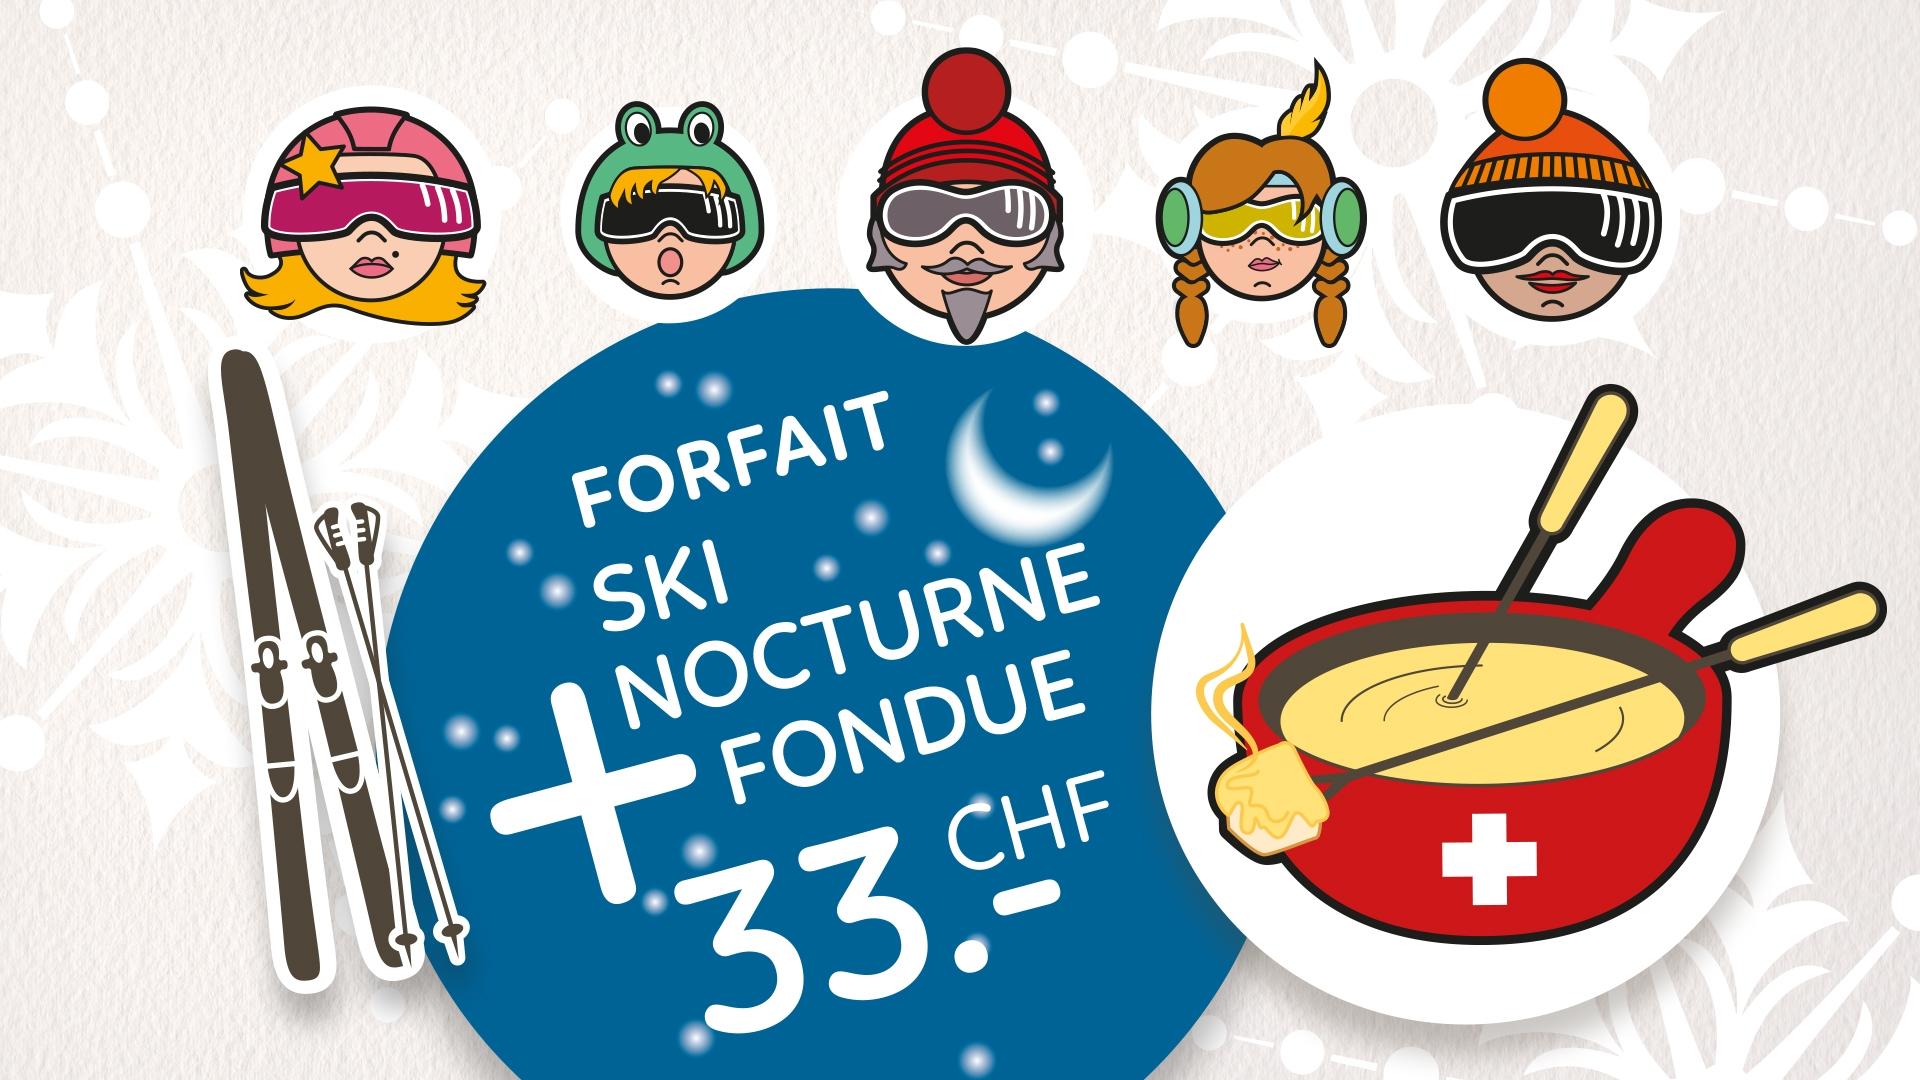 Forfait Ski nocturne & Fondue